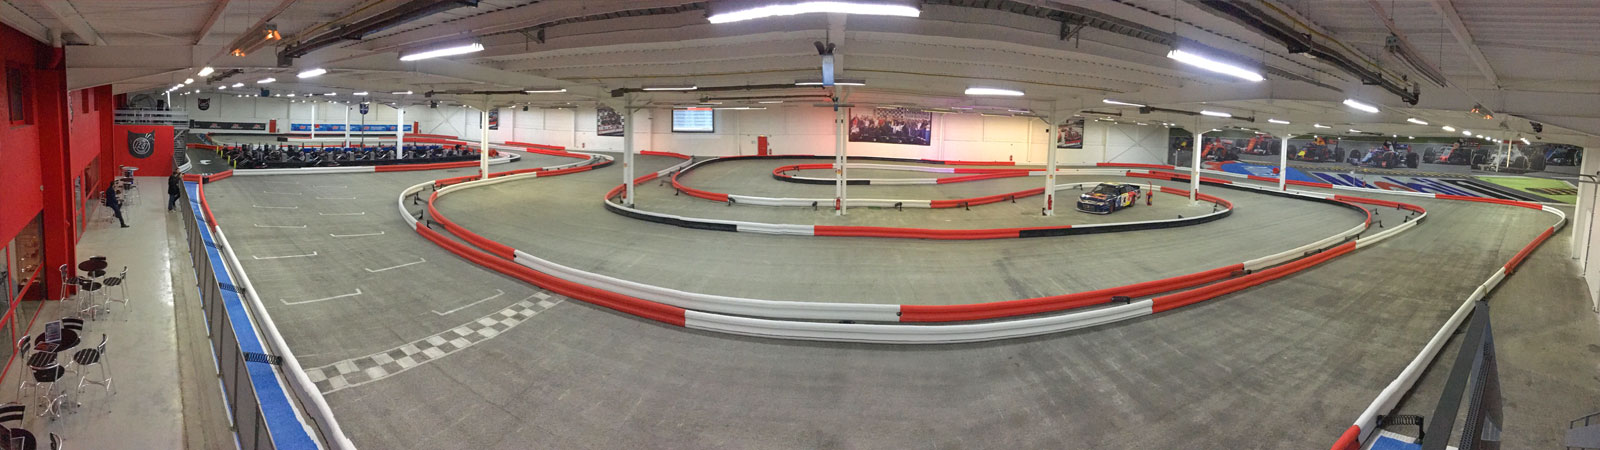 Lyon Location indoor kart racing